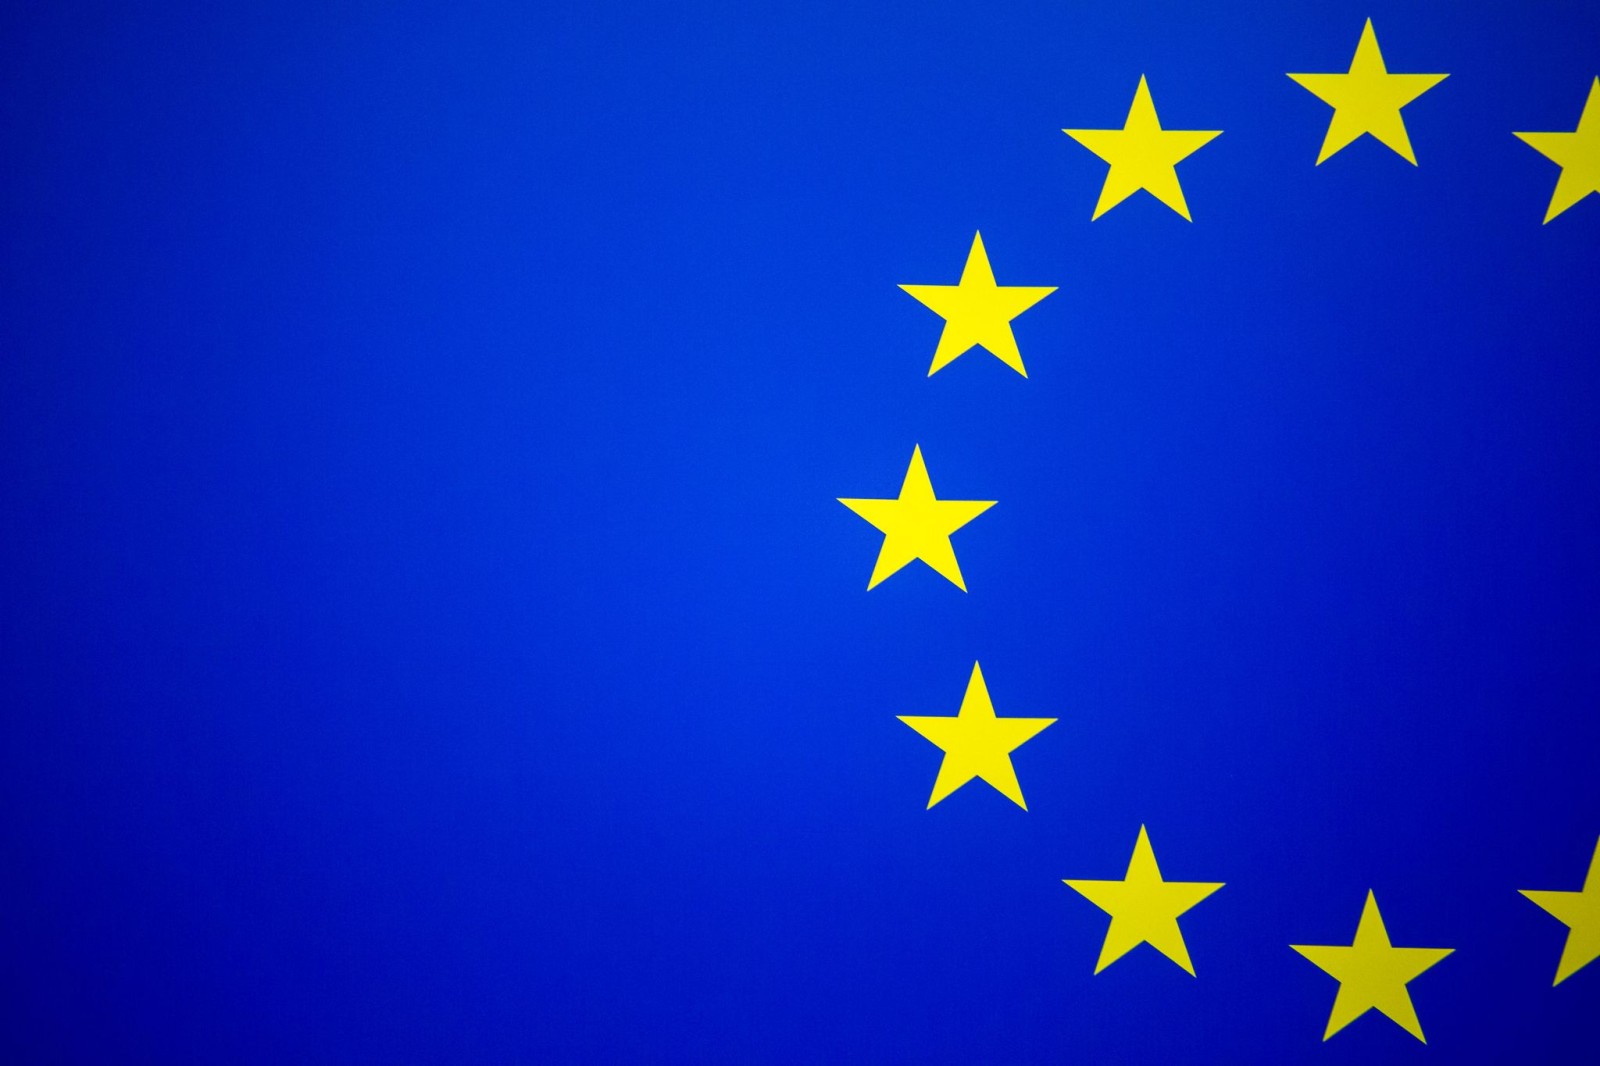 Einige Sterne der Europäischen Flagge auf einer Flagge der Europäischen Union.